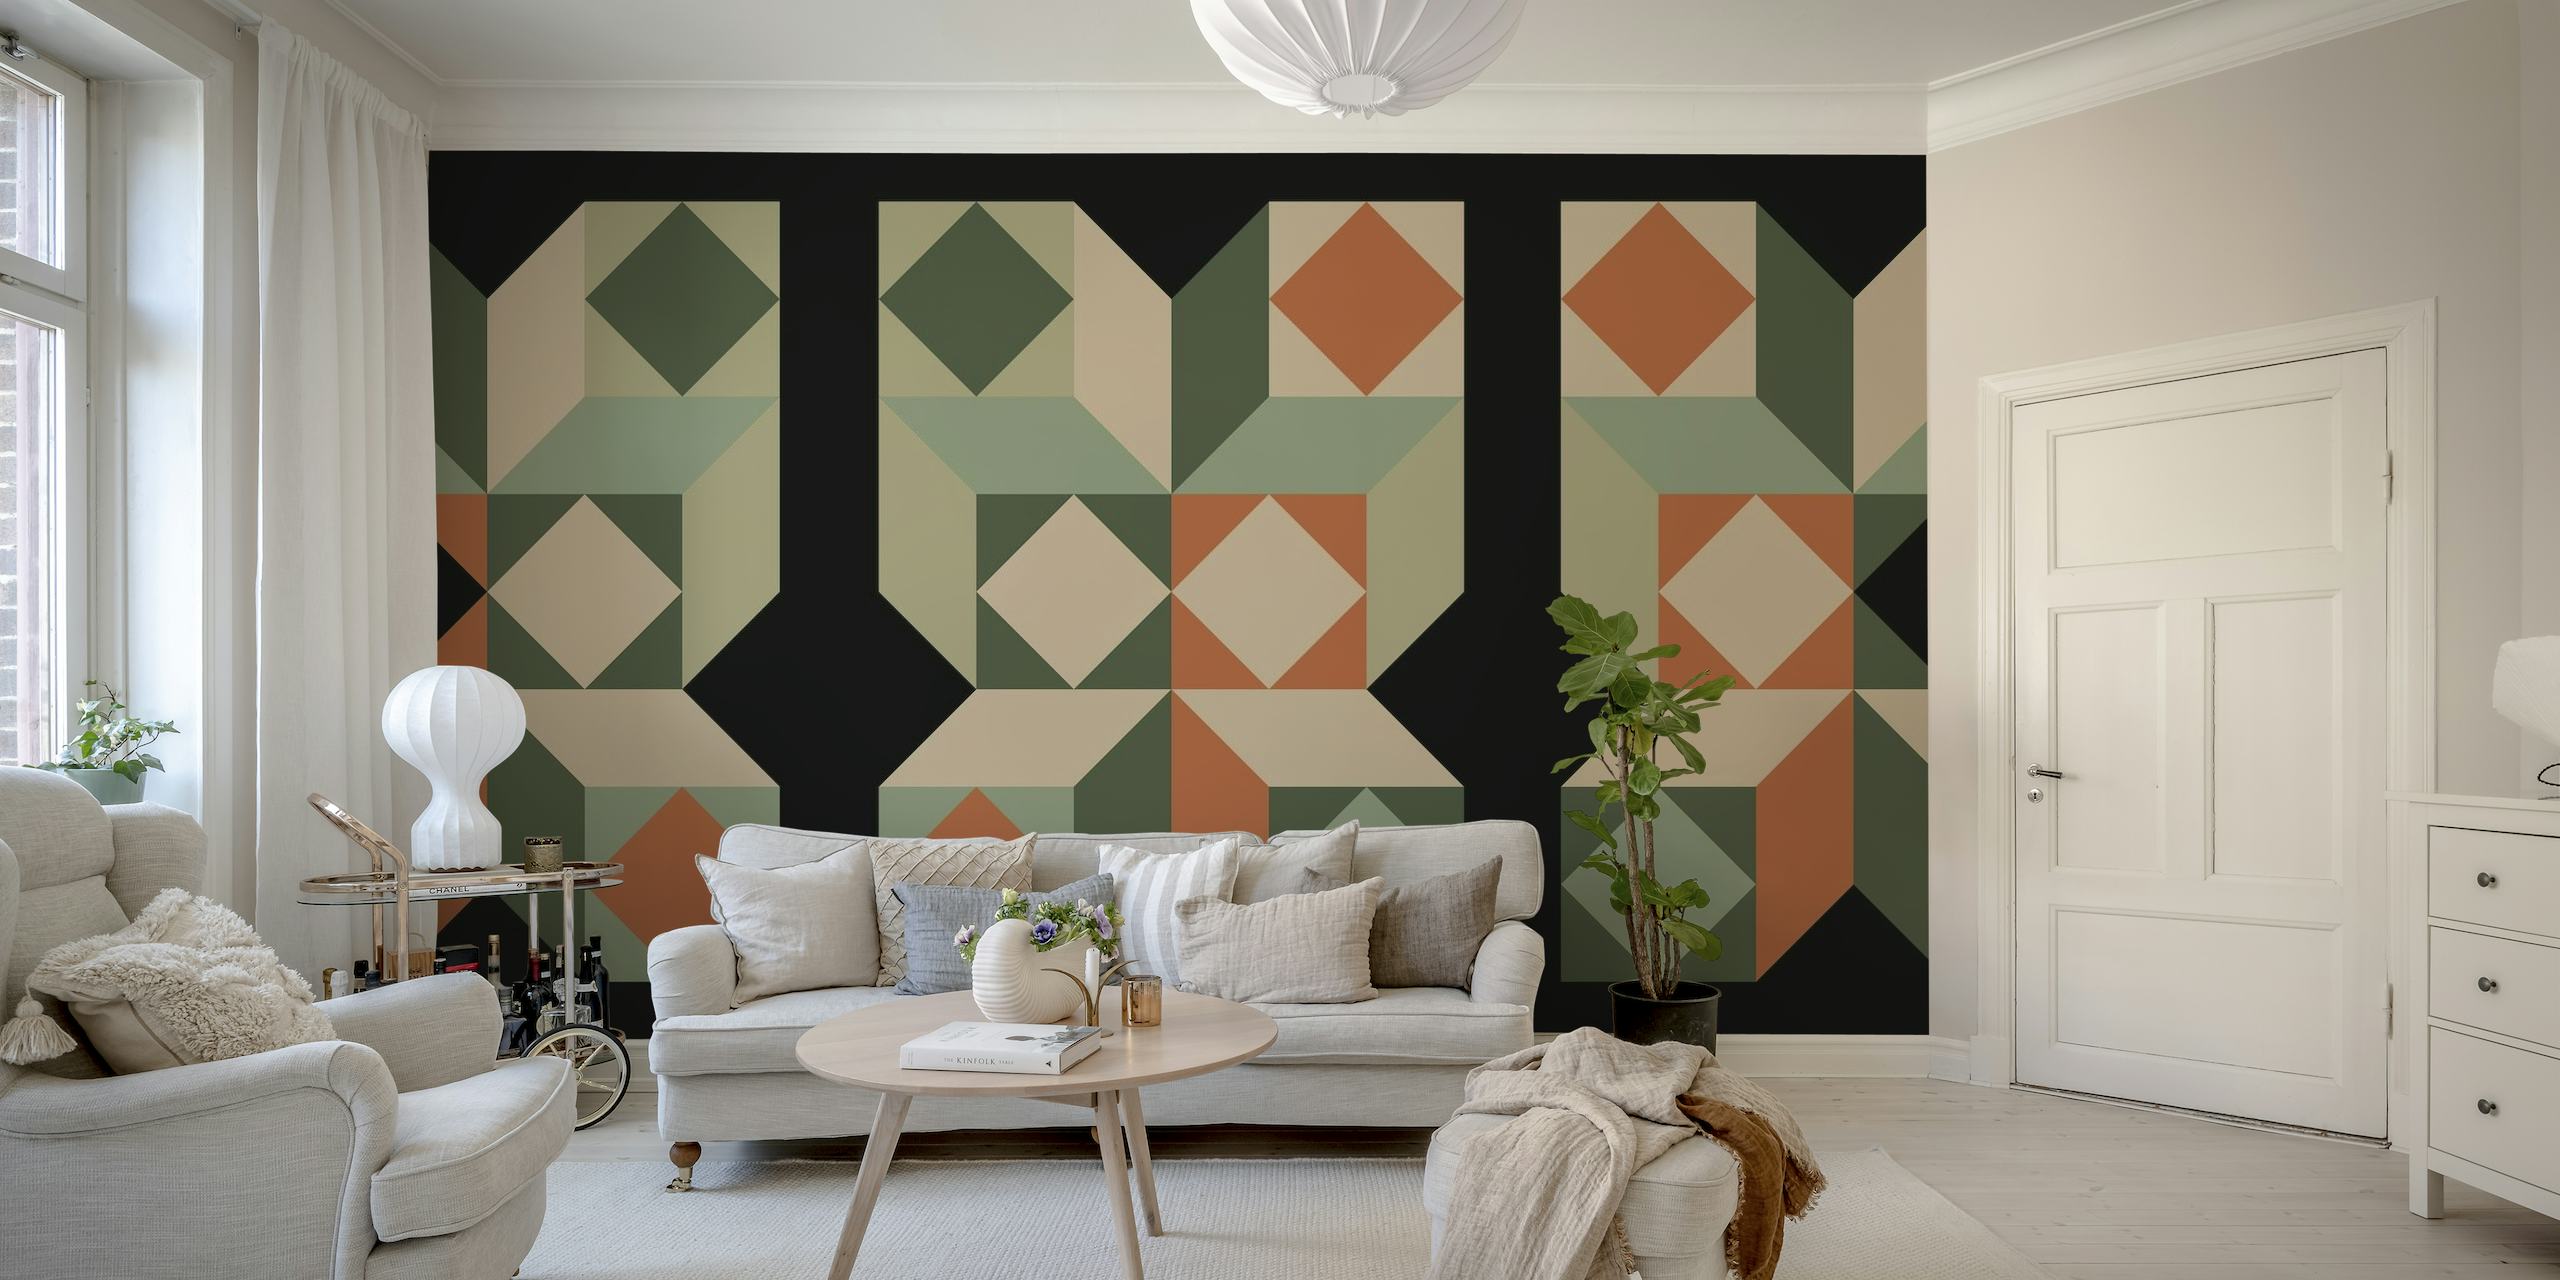 Midcentury Bauhaus-inspirerad tapet med geometriska mönster i gröna, orange och neutrala toner.